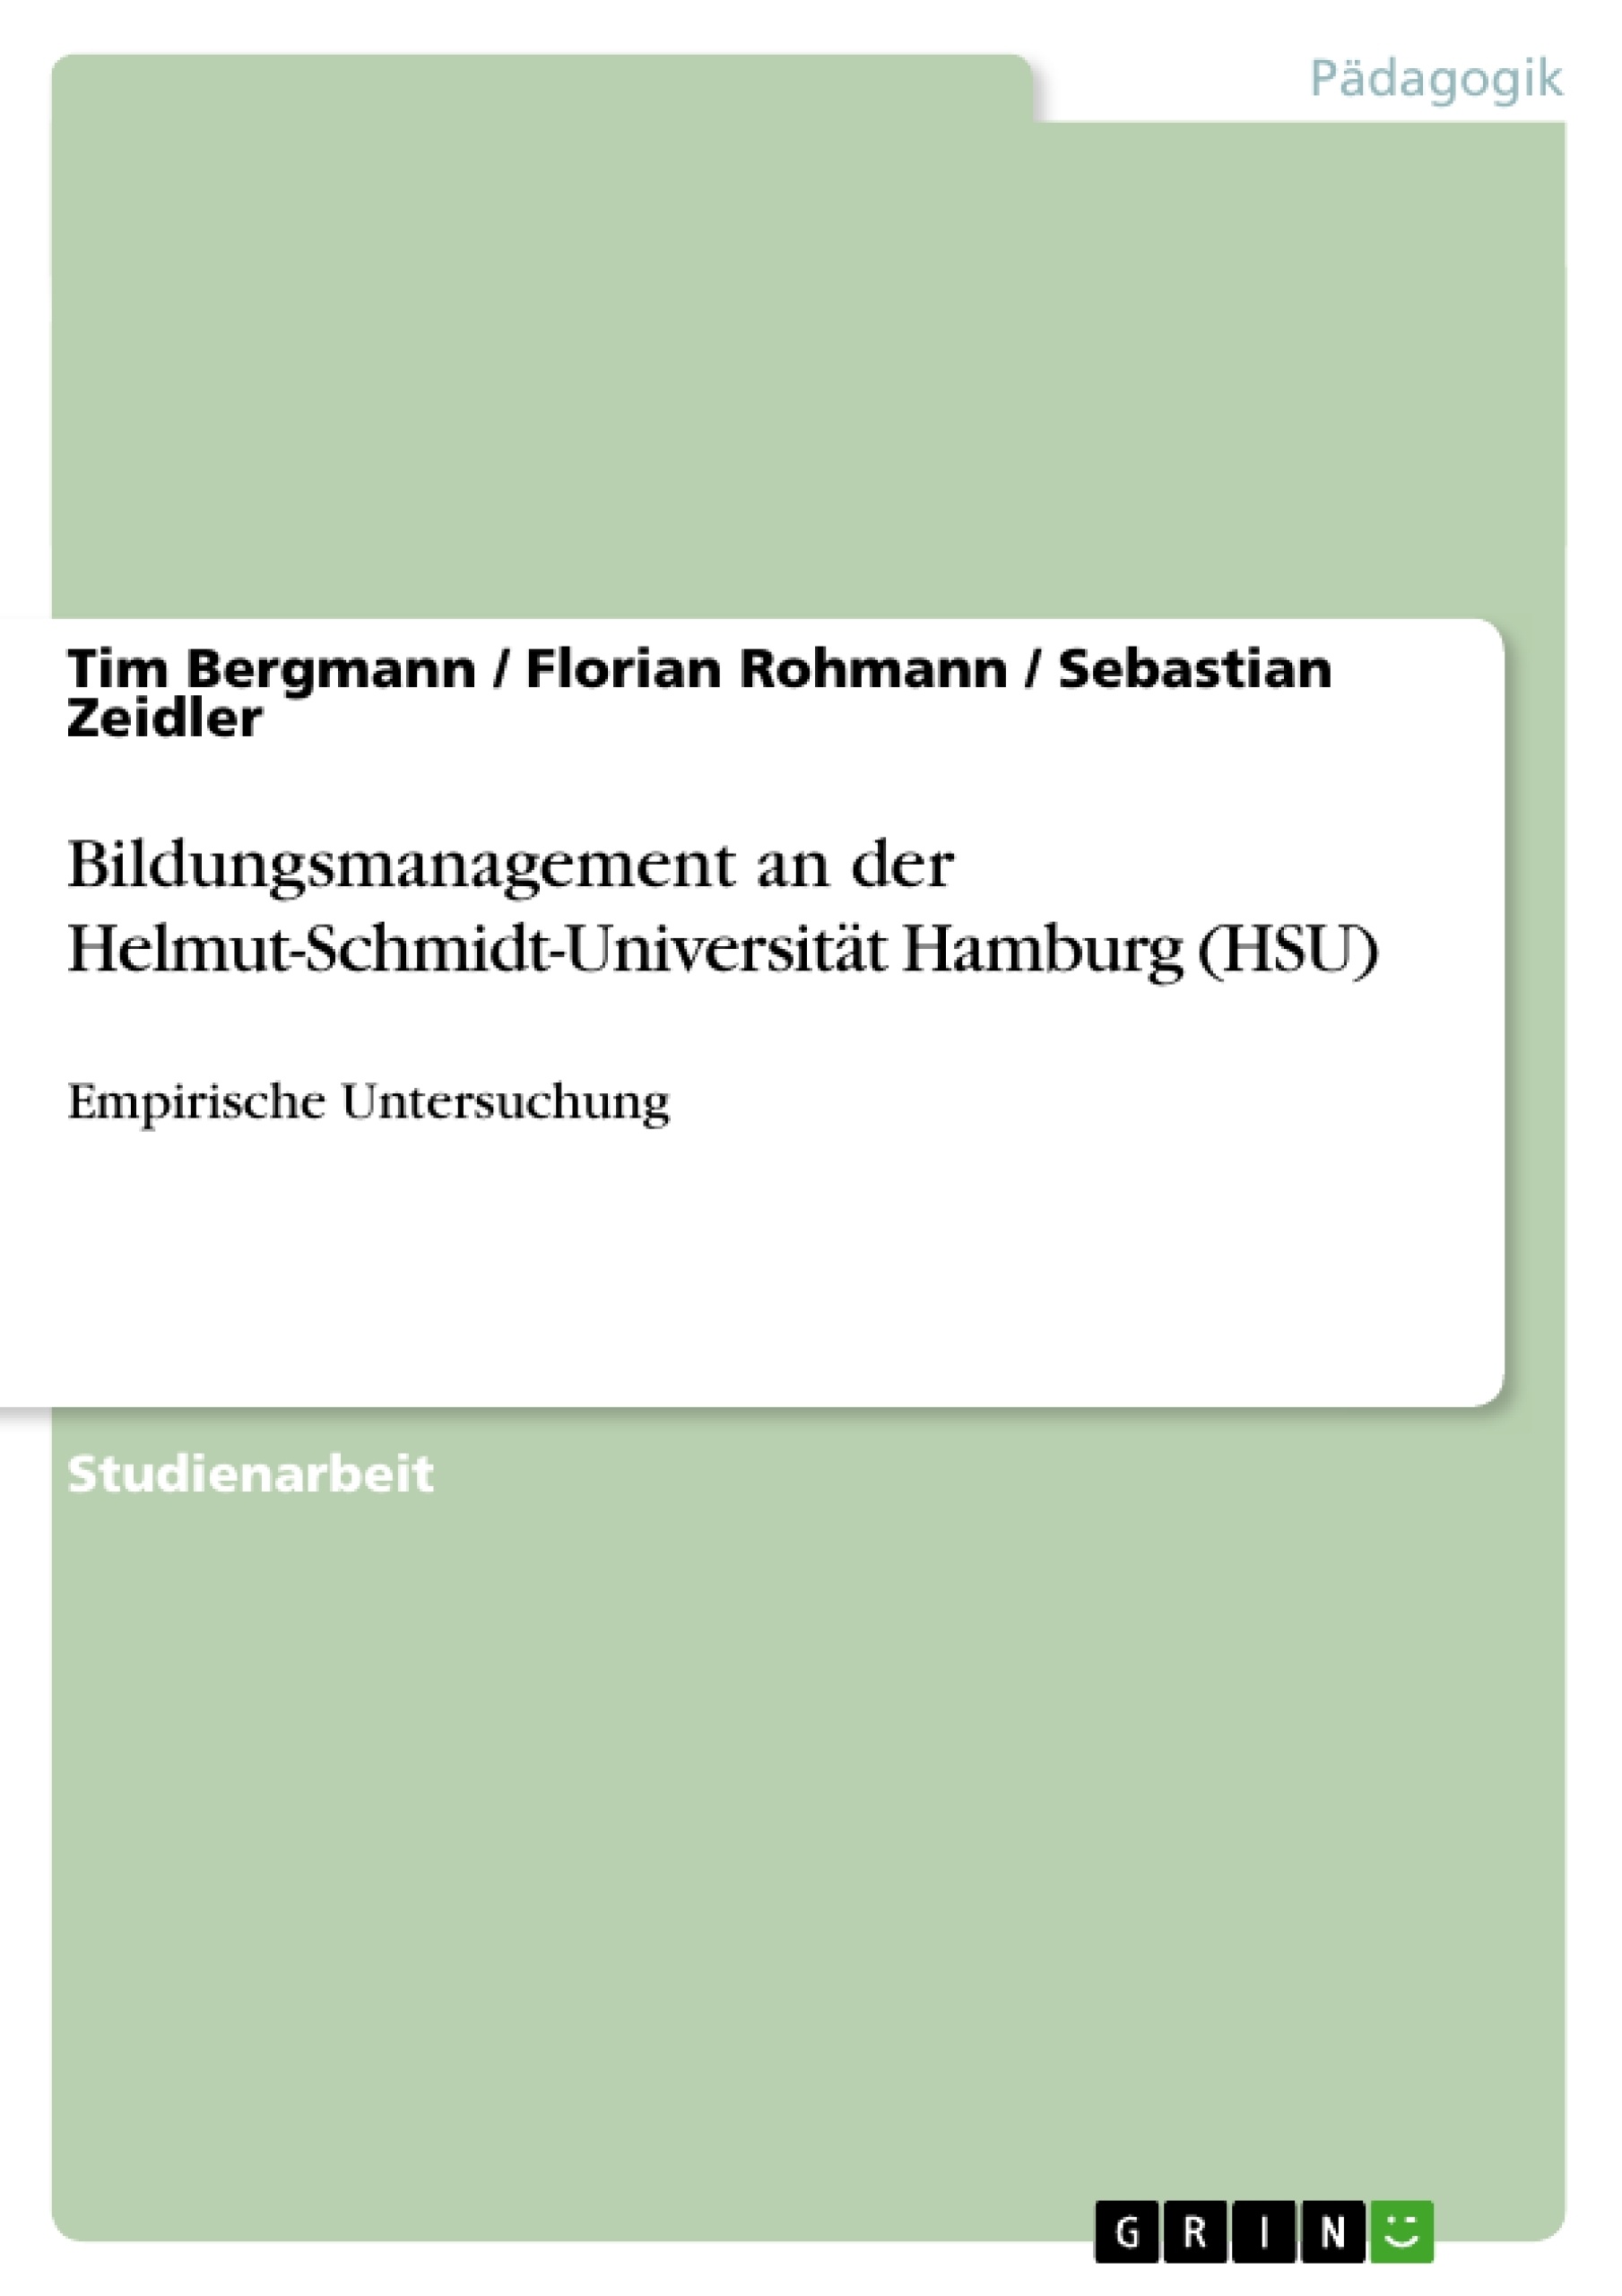 Title: Bildungsmanagement an der Helmut-Schmidt-Universität Hamburg (HSU)